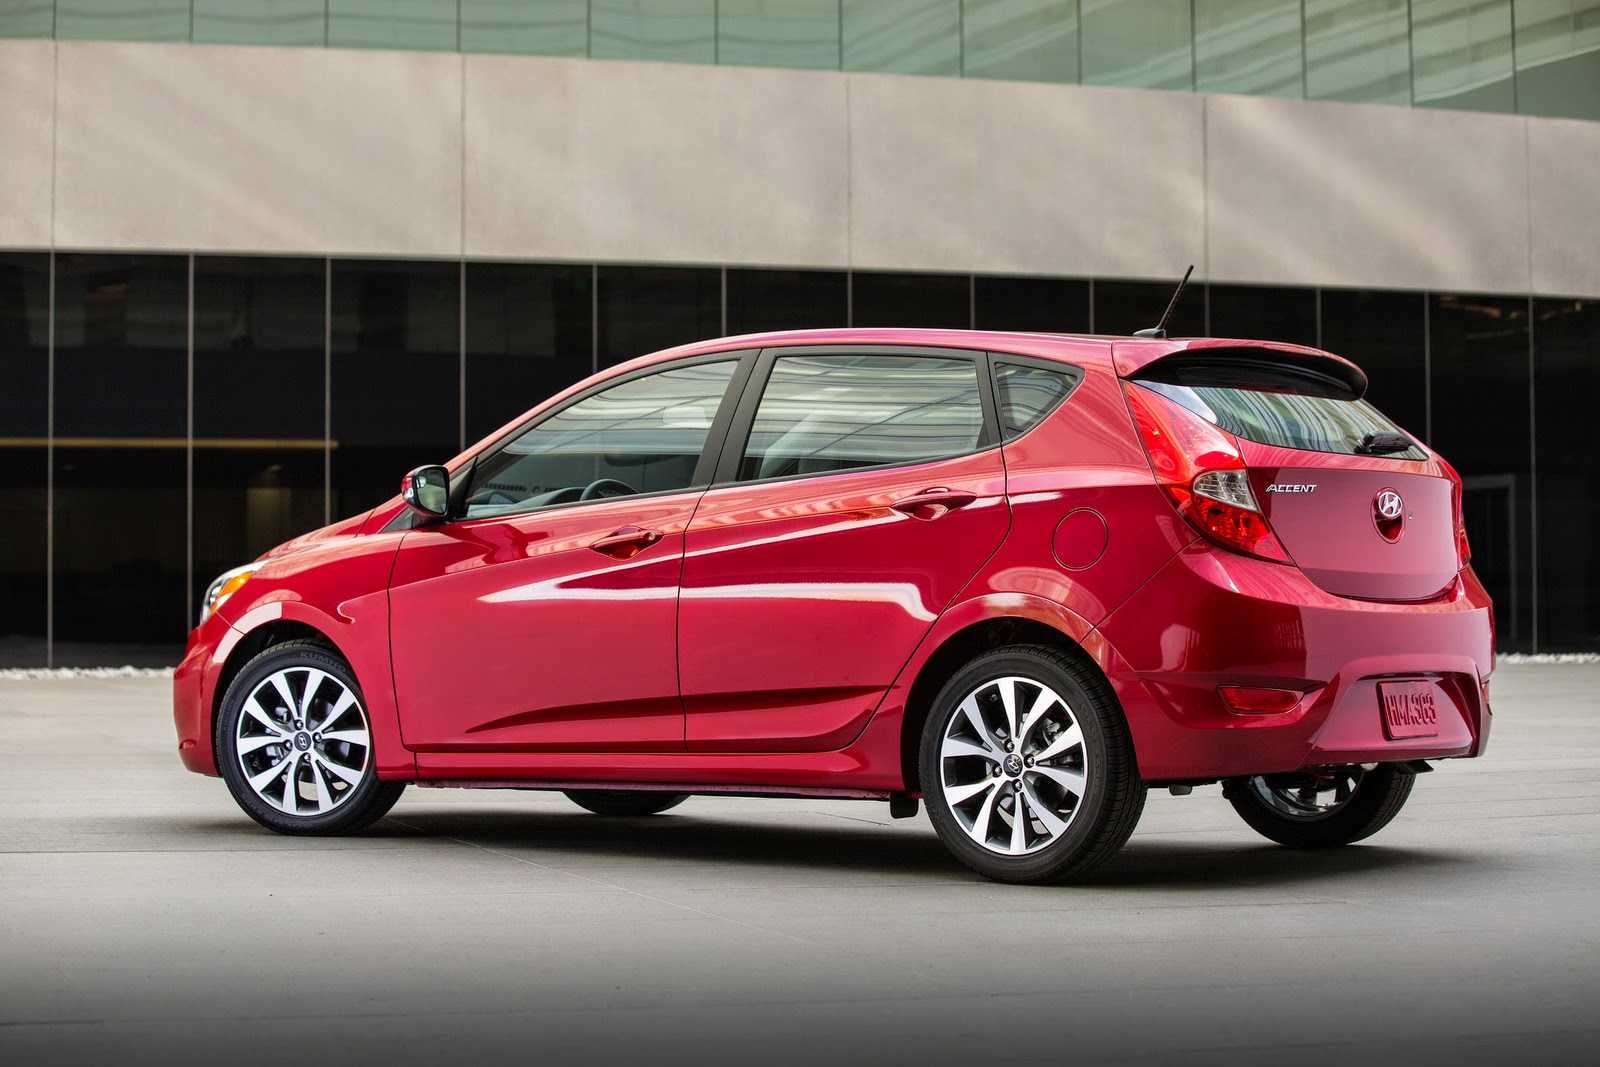 2015 Hyundai Accent in Canada  Canadian Prices Trims Specs Photos  Recalls  AutoTraderca